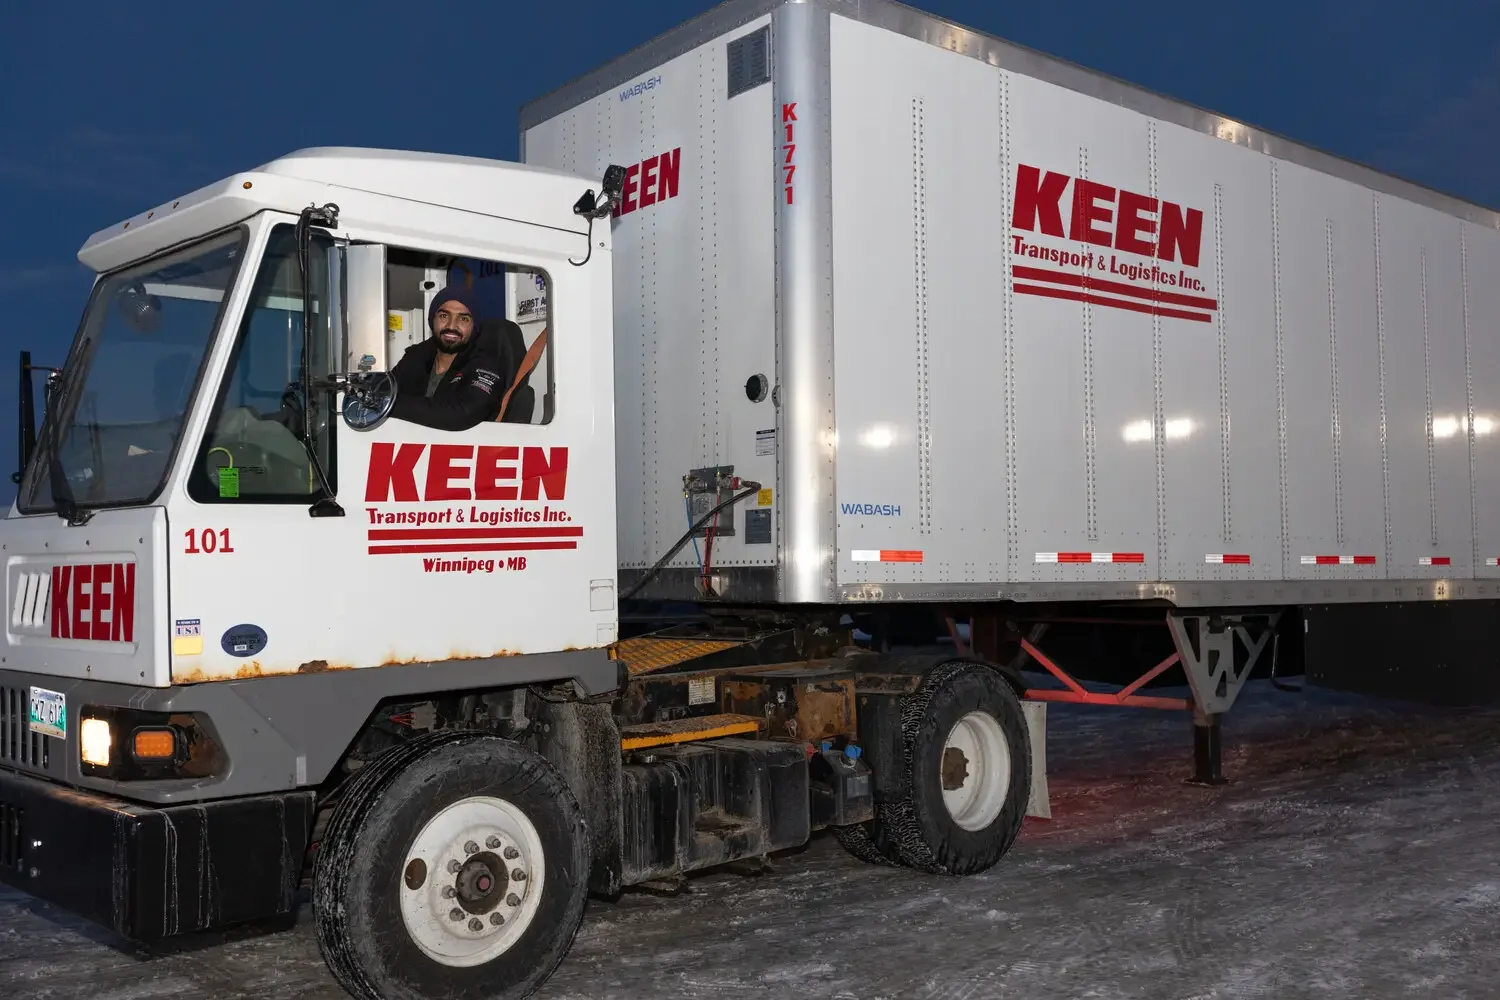 Keen Transport & Logistics Services Canada